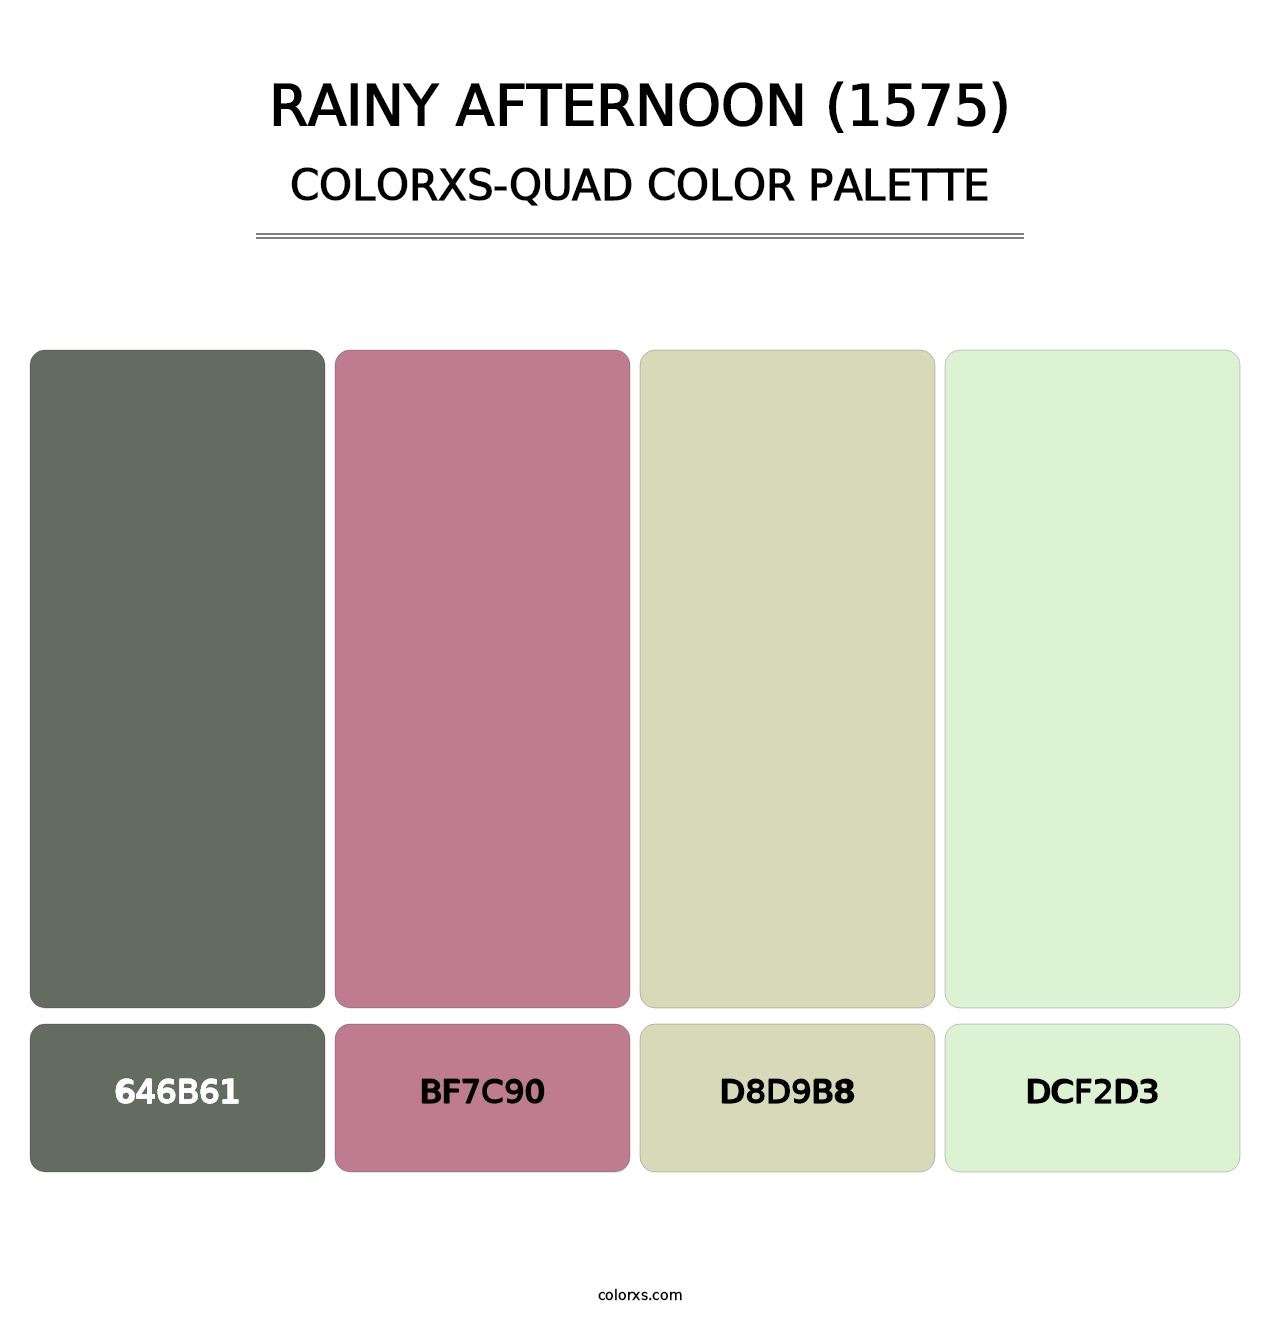 Rainy Afternoon (1575) - Colorxs Quad Palette